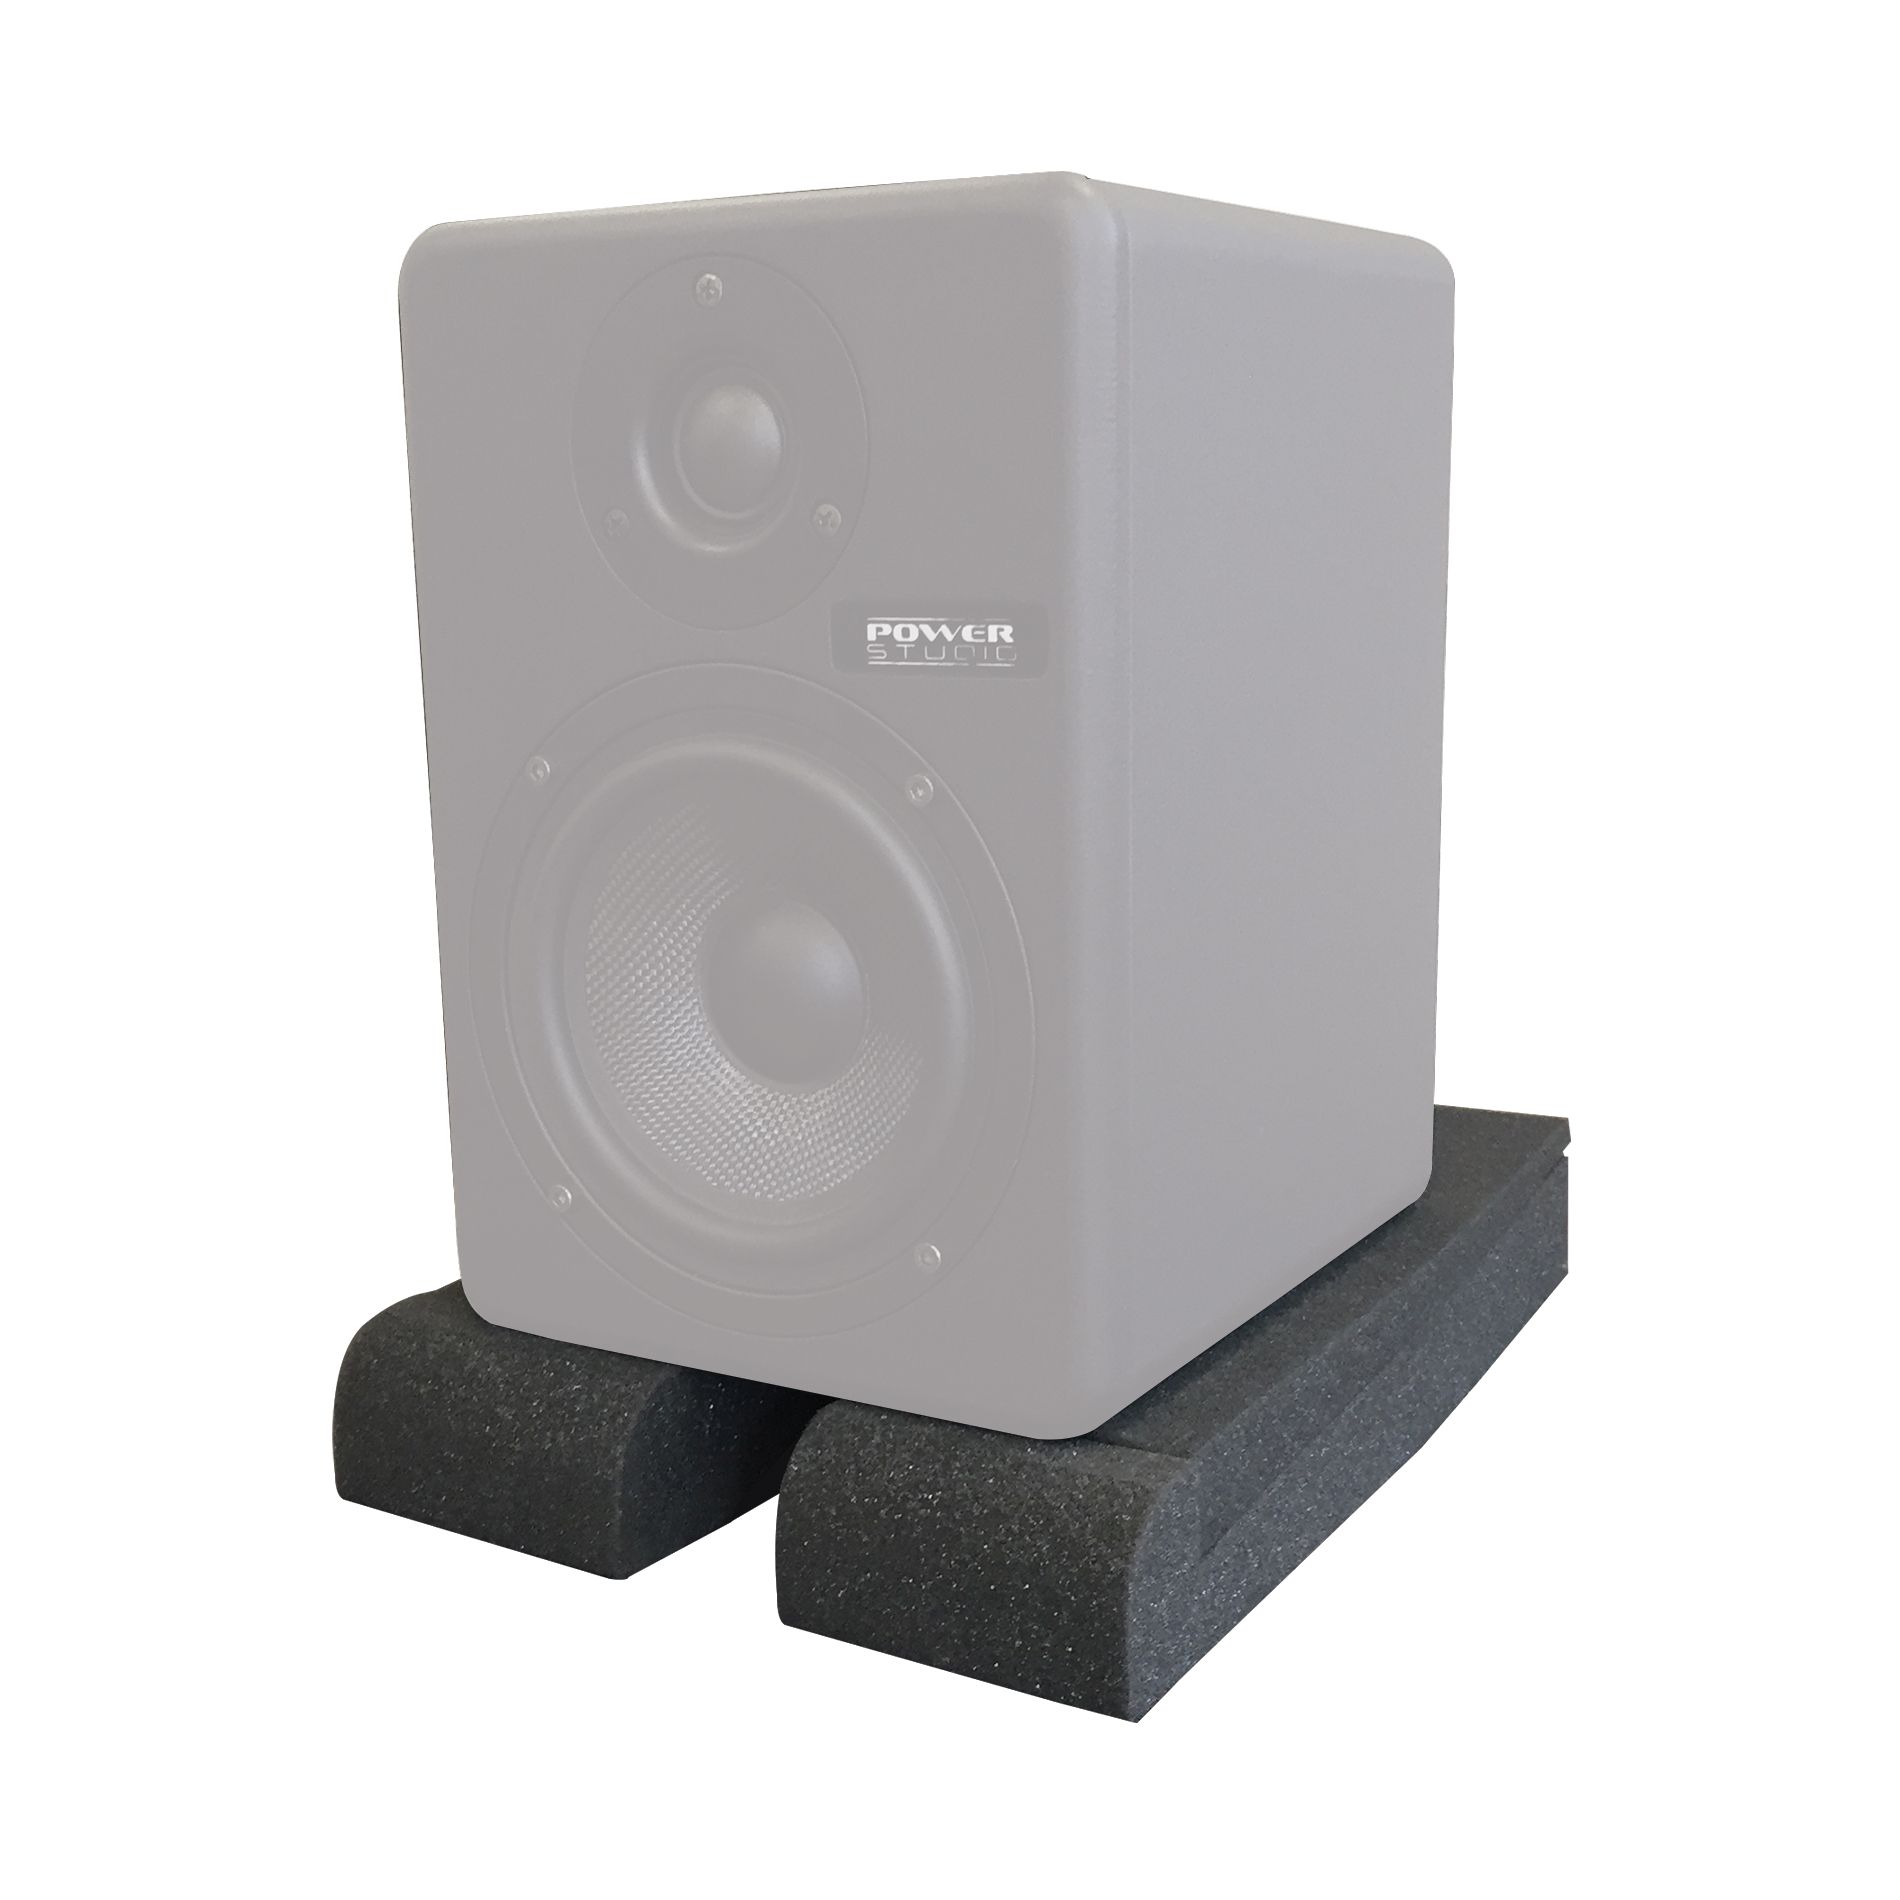 Power Studio Mf 5 - Speakers pads - Variation 1